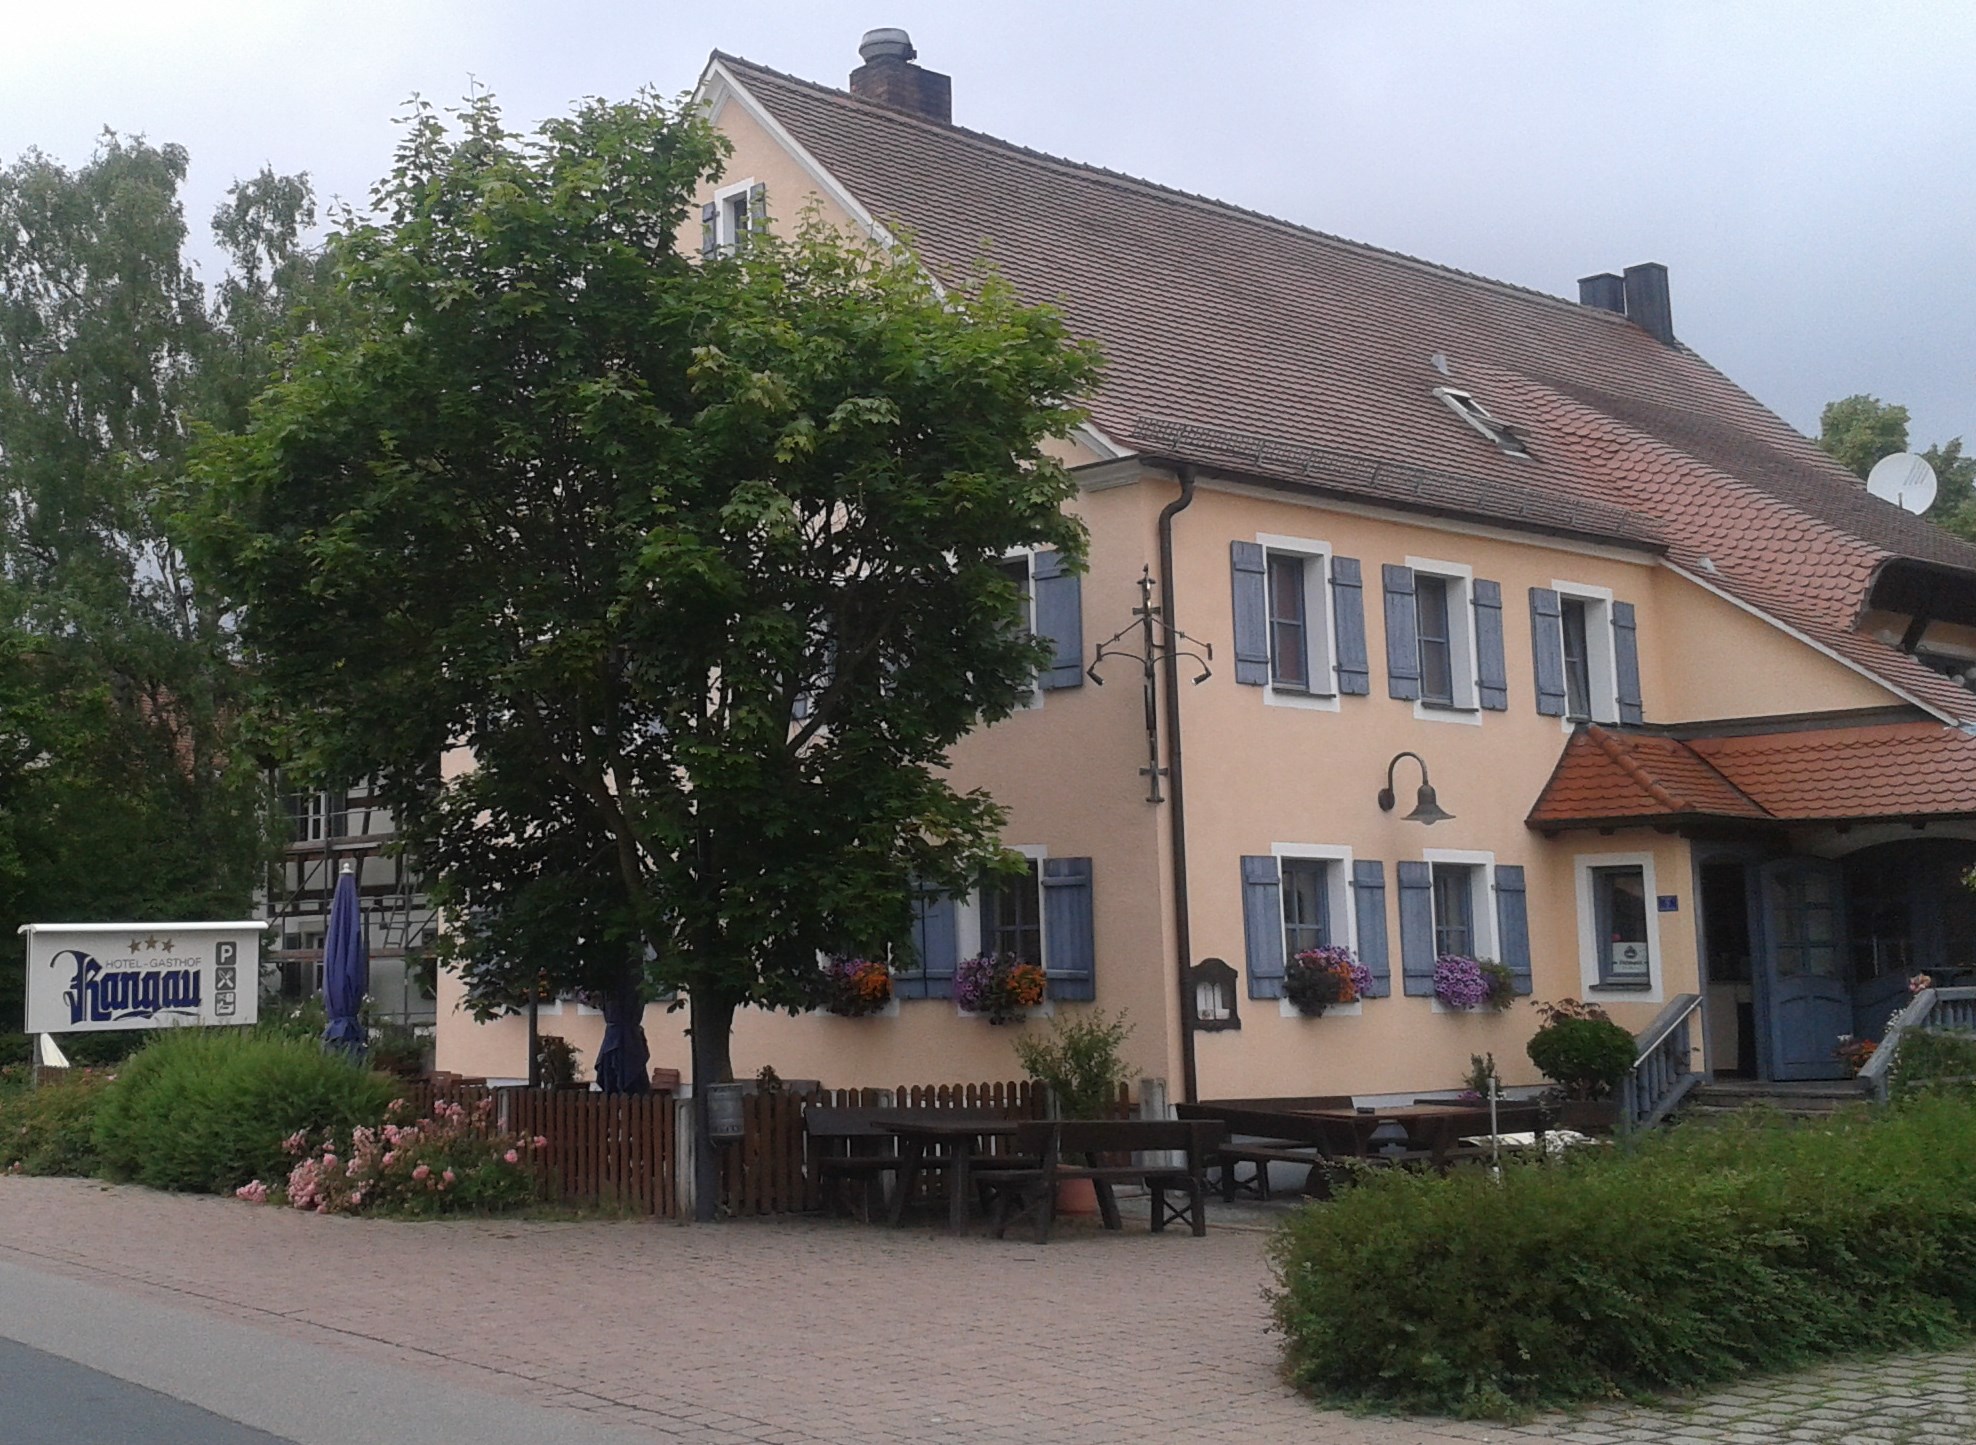 Bild 1 Gasthof Rangau in Ansbach